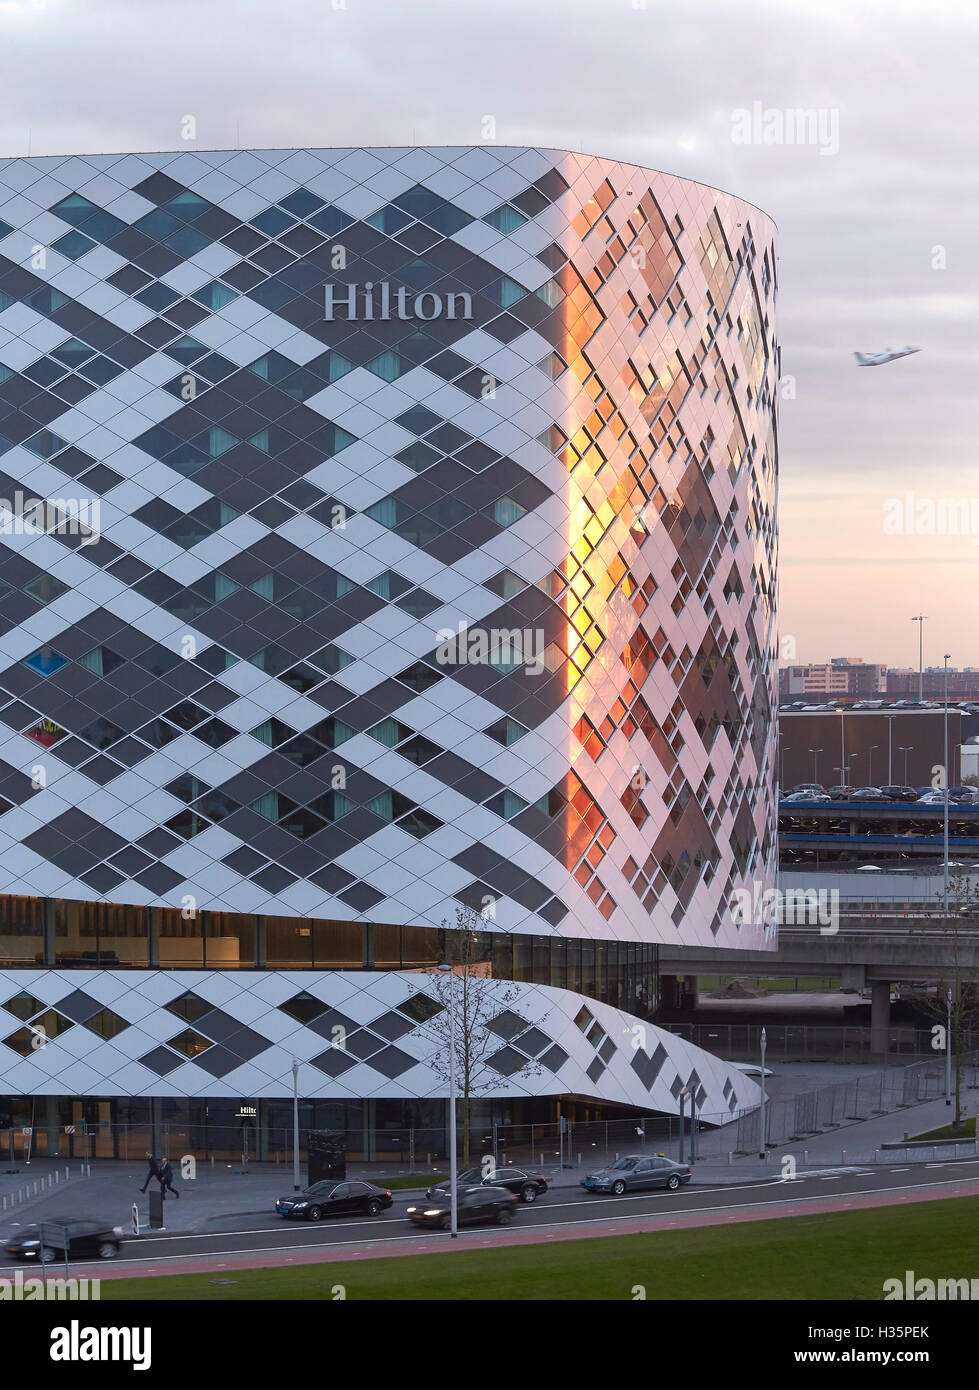 Diamant gemusterten Fassade im Abendlicht. Hilton Amsterdam Airport Schiphol, Amsterdam, Niederlande. Architekt: Mecanoo Architects, 2015. Stockfoto